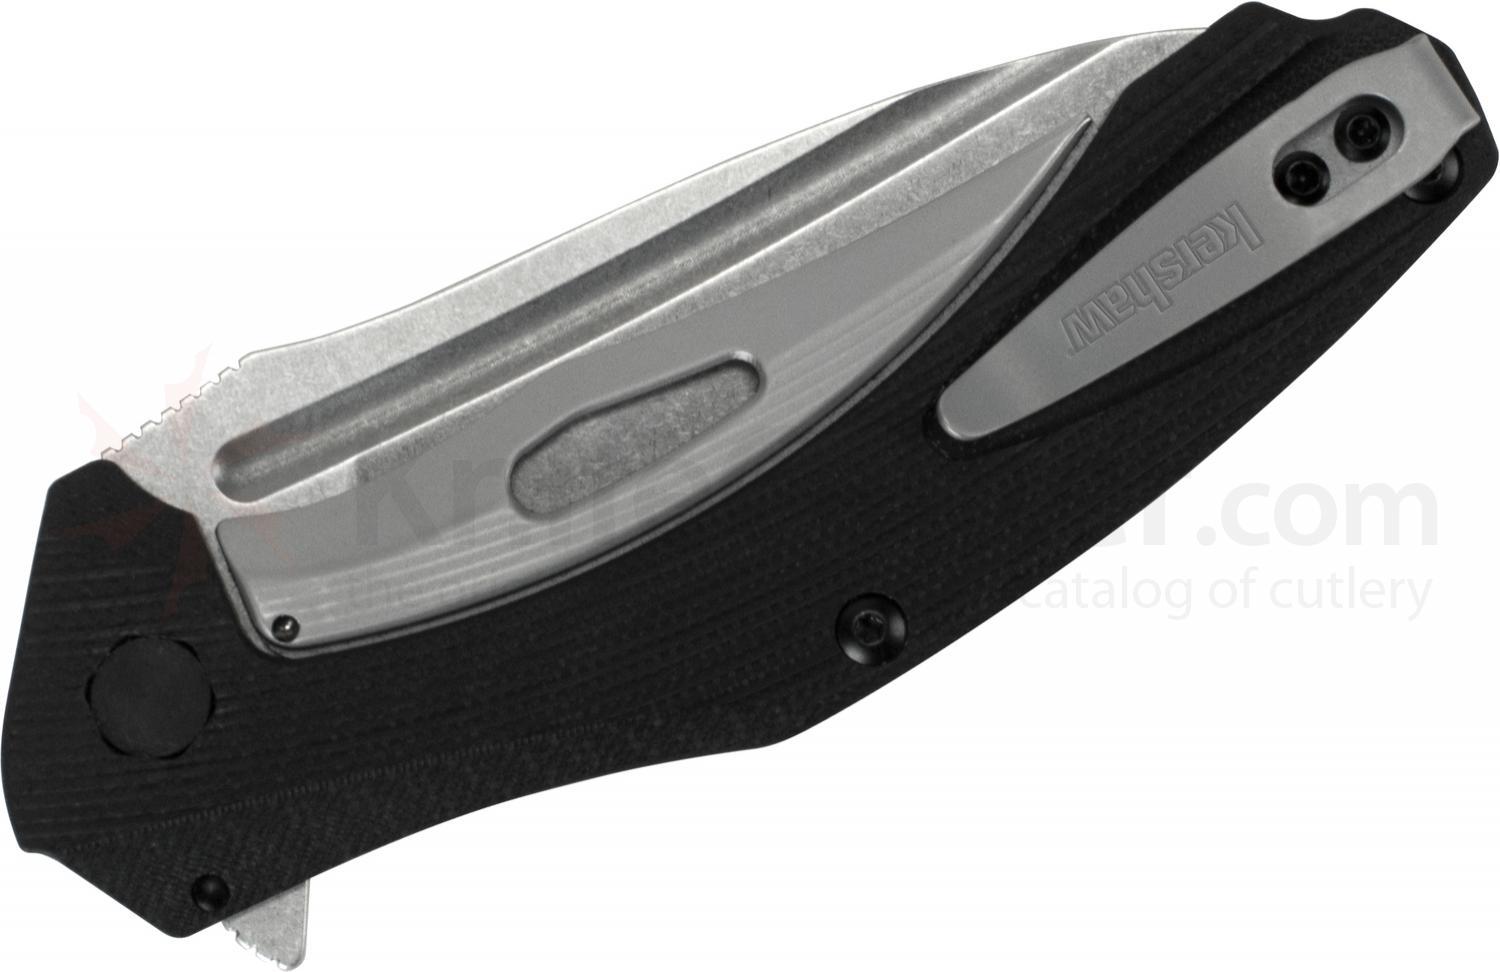 Складной полуавтоматический нож Kershaw Natrix K7007, сталь 8Cr13MoV, рукоять G-10 - фото 3